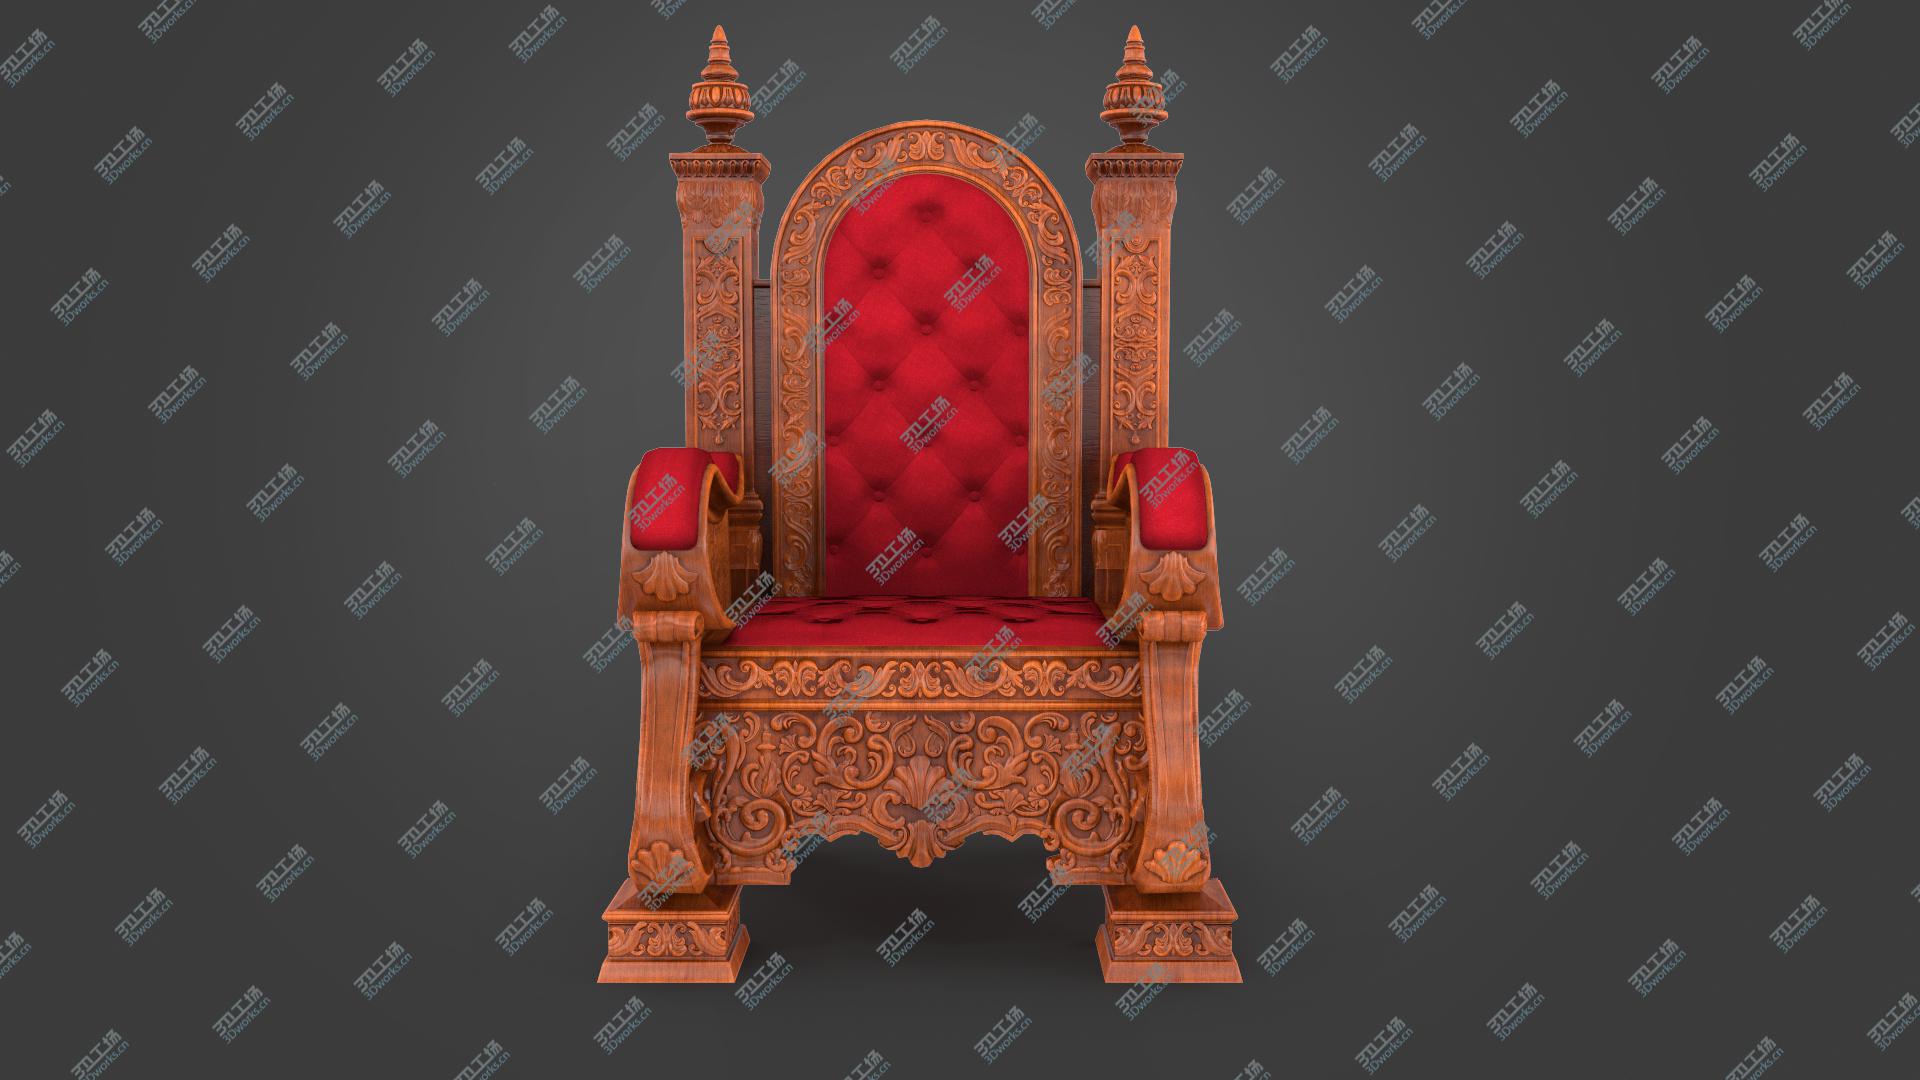 images/goods_img/202105074/Wooden Throne 3D model/2.jpg